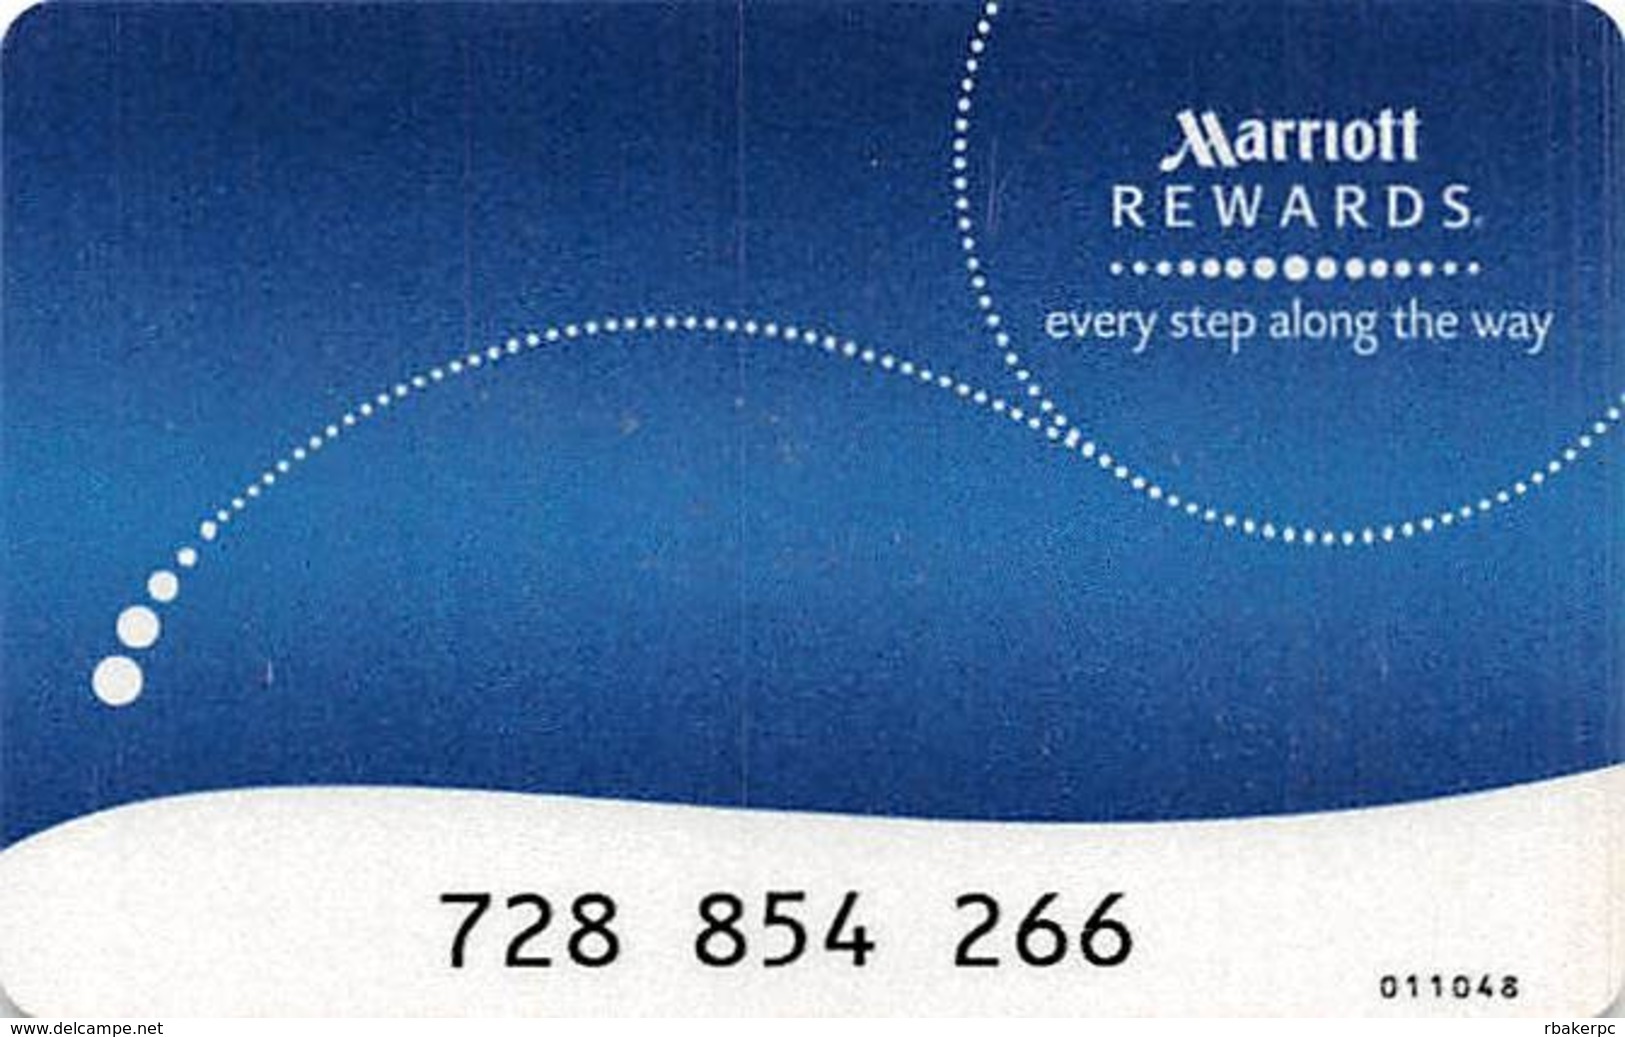 Marriott Rewards Card - Hotel Keycards